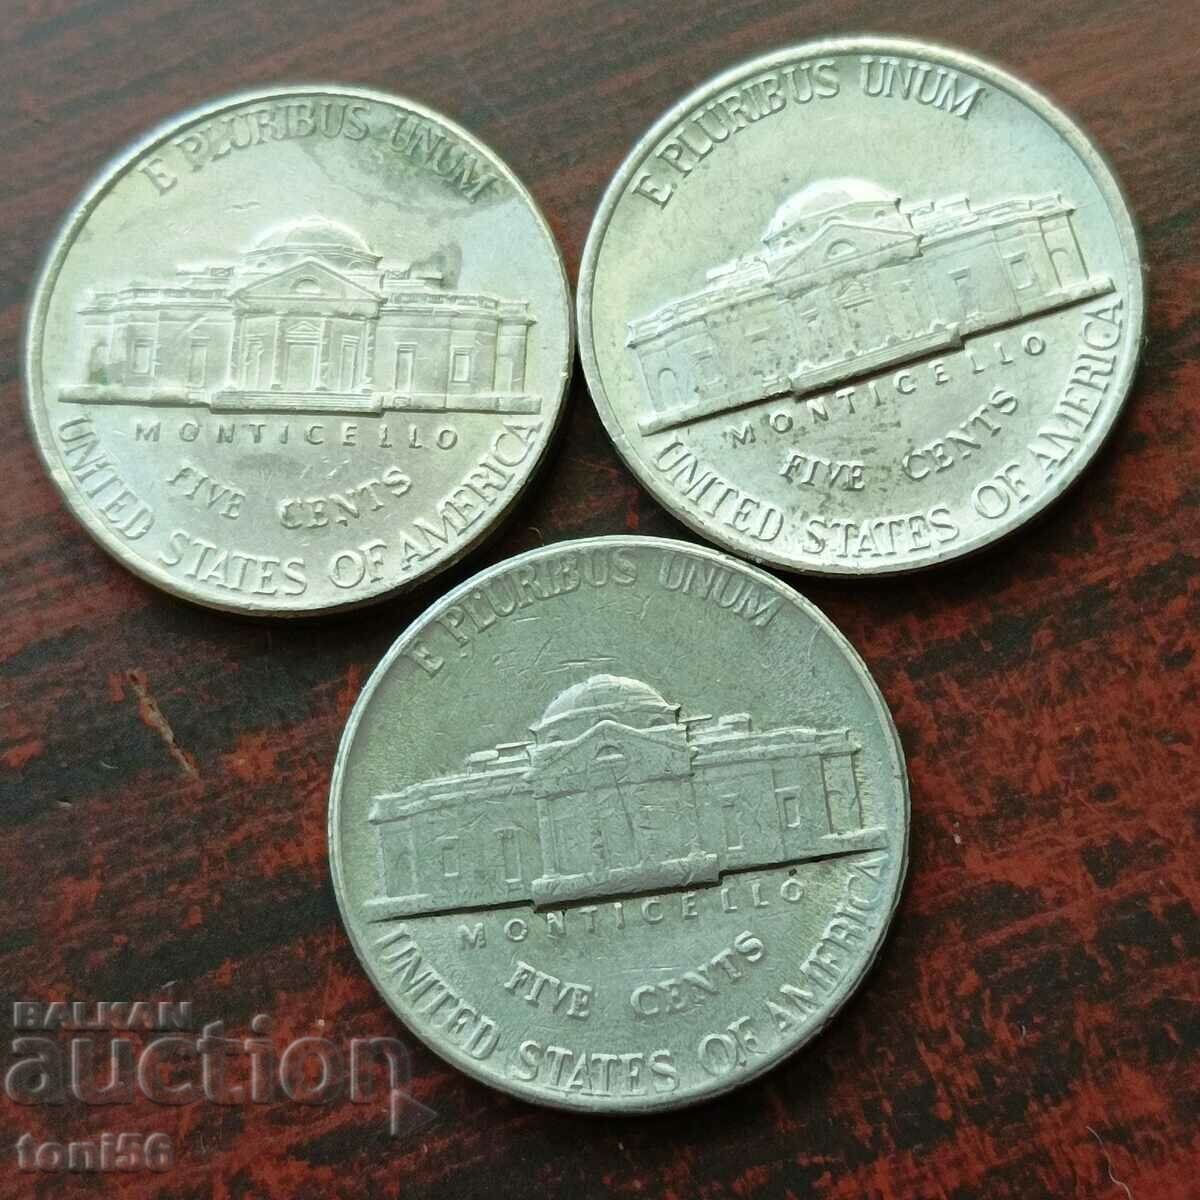 SUA 3 x 5 cenți 1972-99